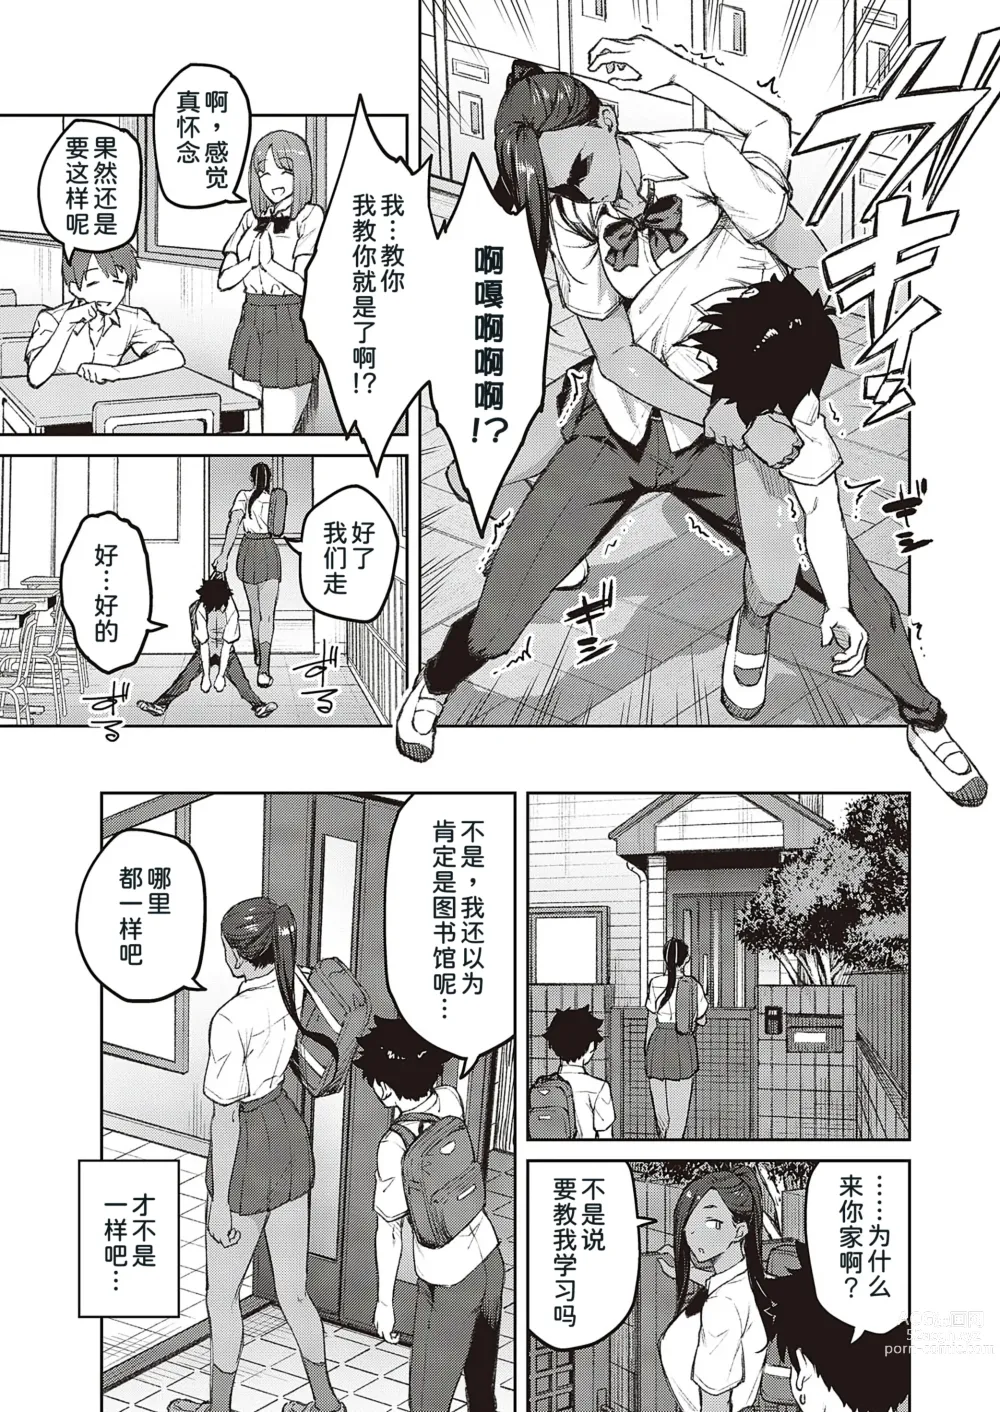 Page 10 of manga Tachiaoi 2